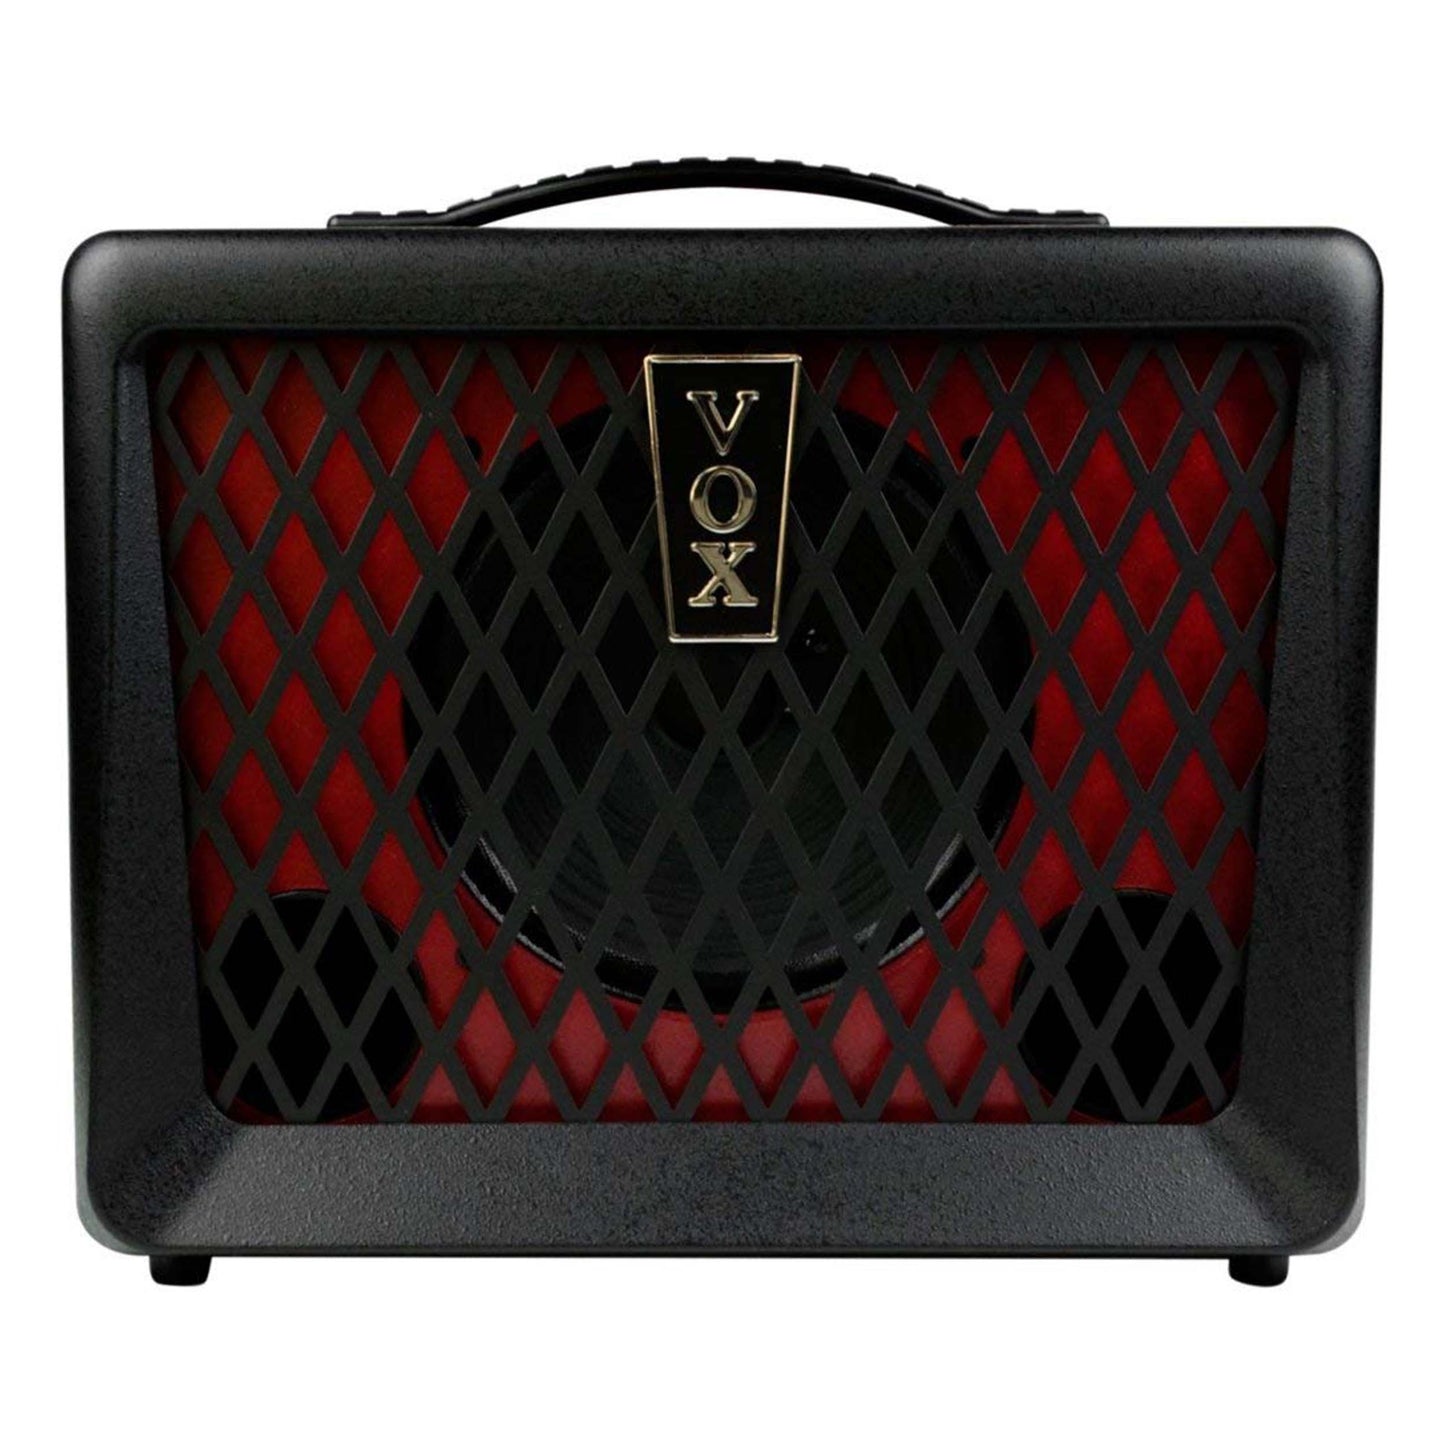 Vox VX50 BA 50W 1x8 Bass Combo Amp